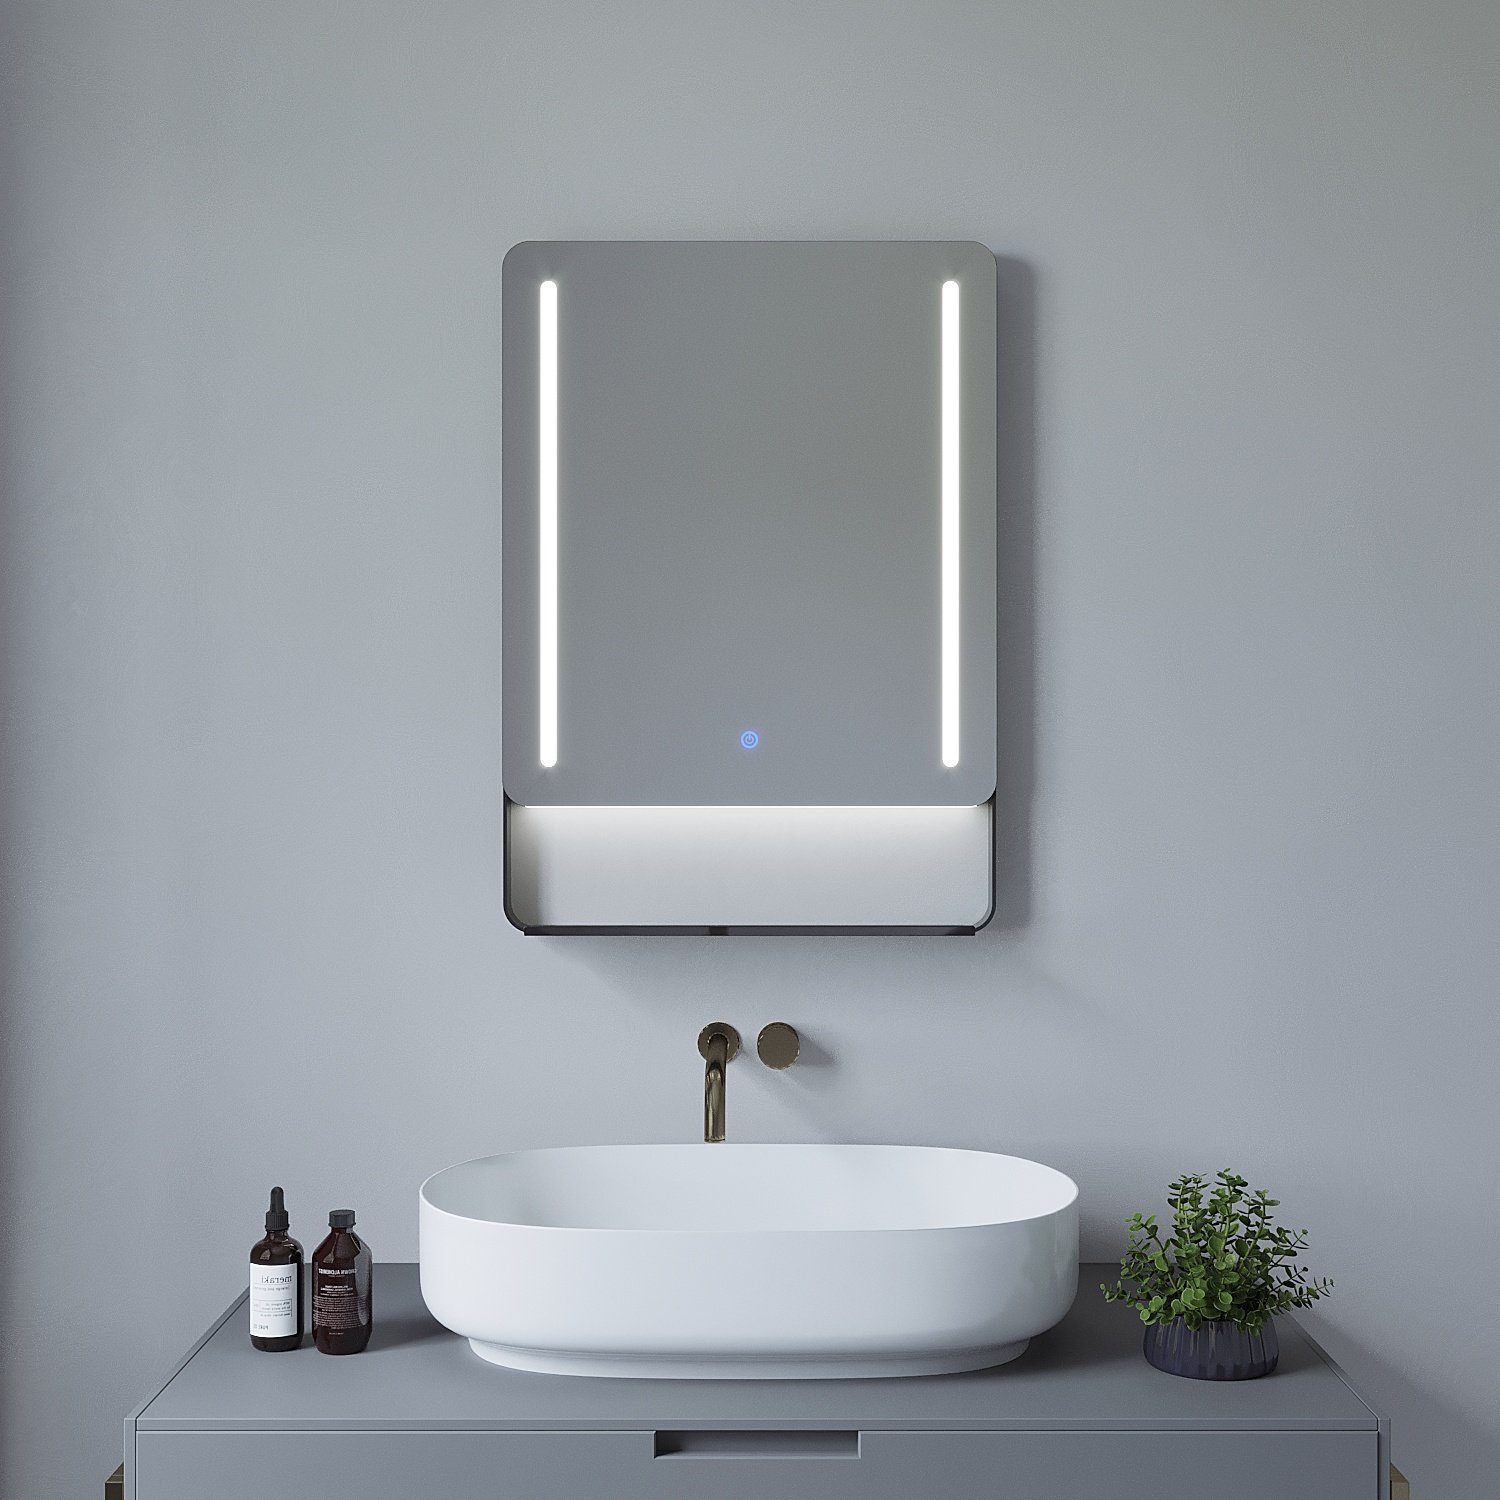 mit AQUABATOS Badezimmerspiegel Ablage 70x50cm, Beleuchtung Wandspiegel Badspiegel 80x60 beschlagfrei,Kaltweiß,energiesparend,dimmbar,Touch